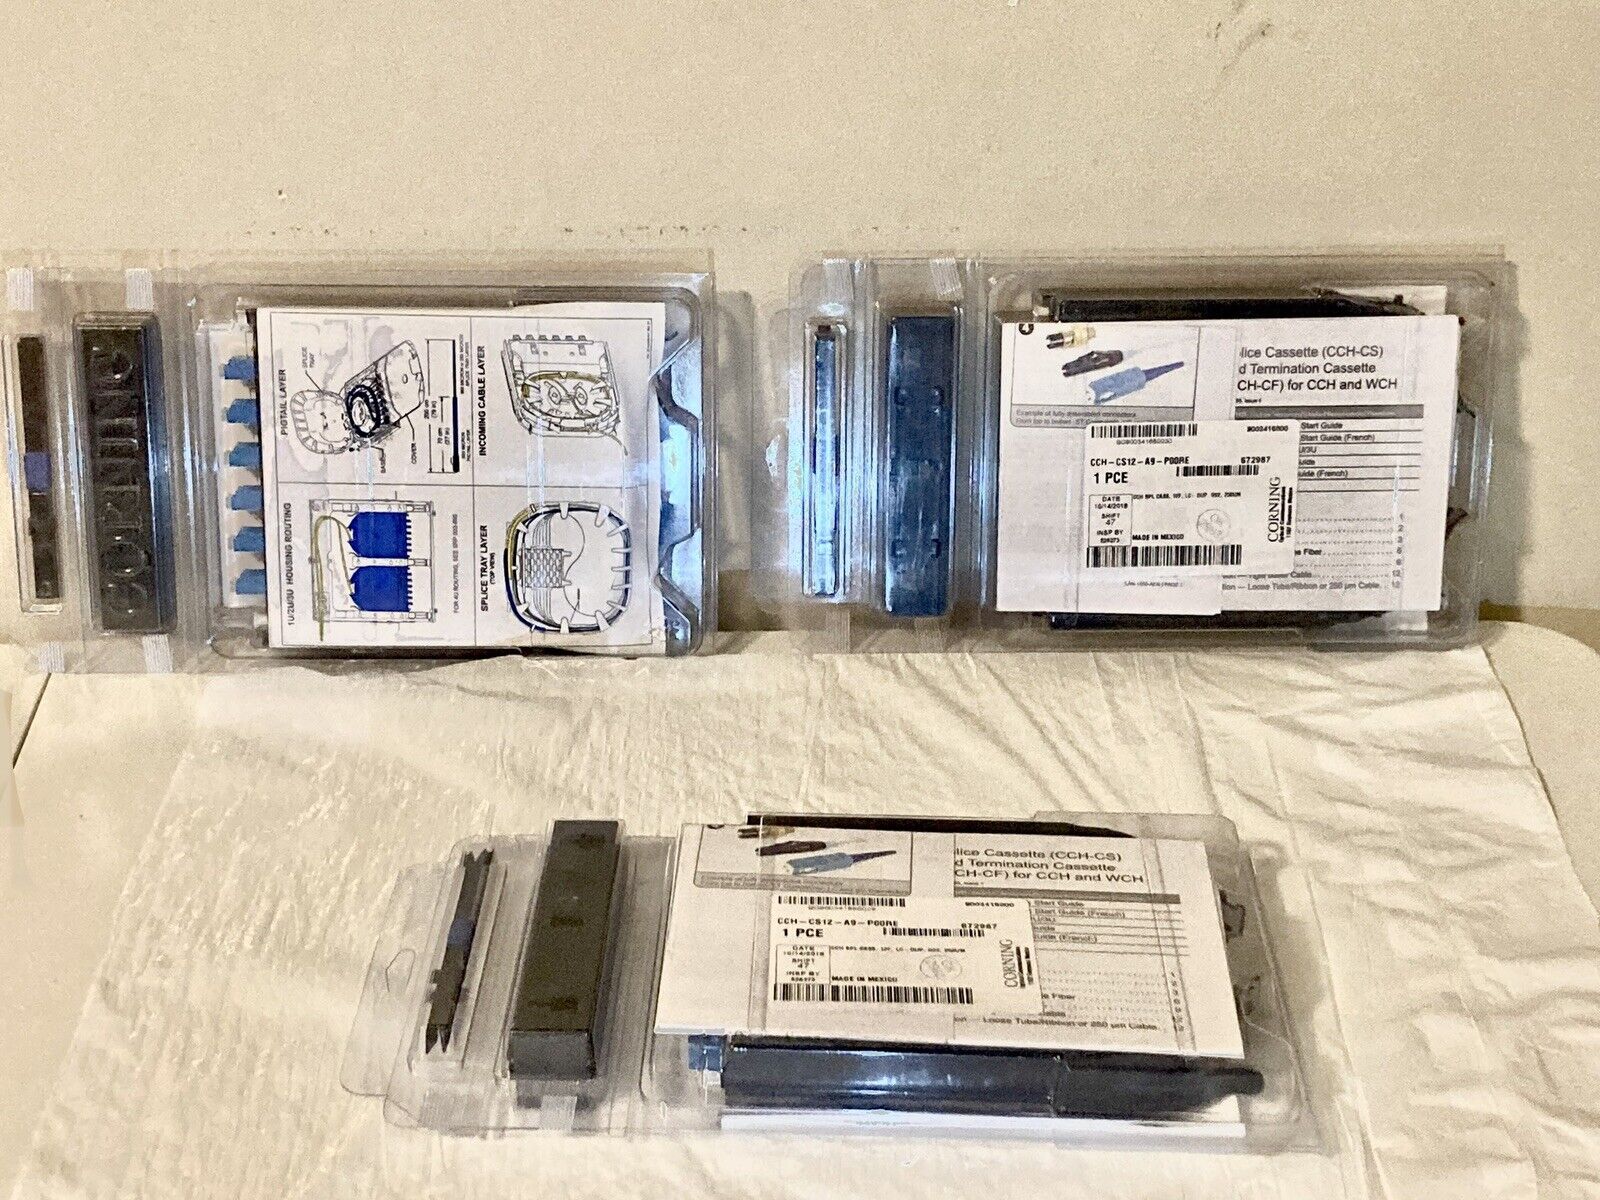 CCH-CS12-A9-P00RE cable splicing cassette